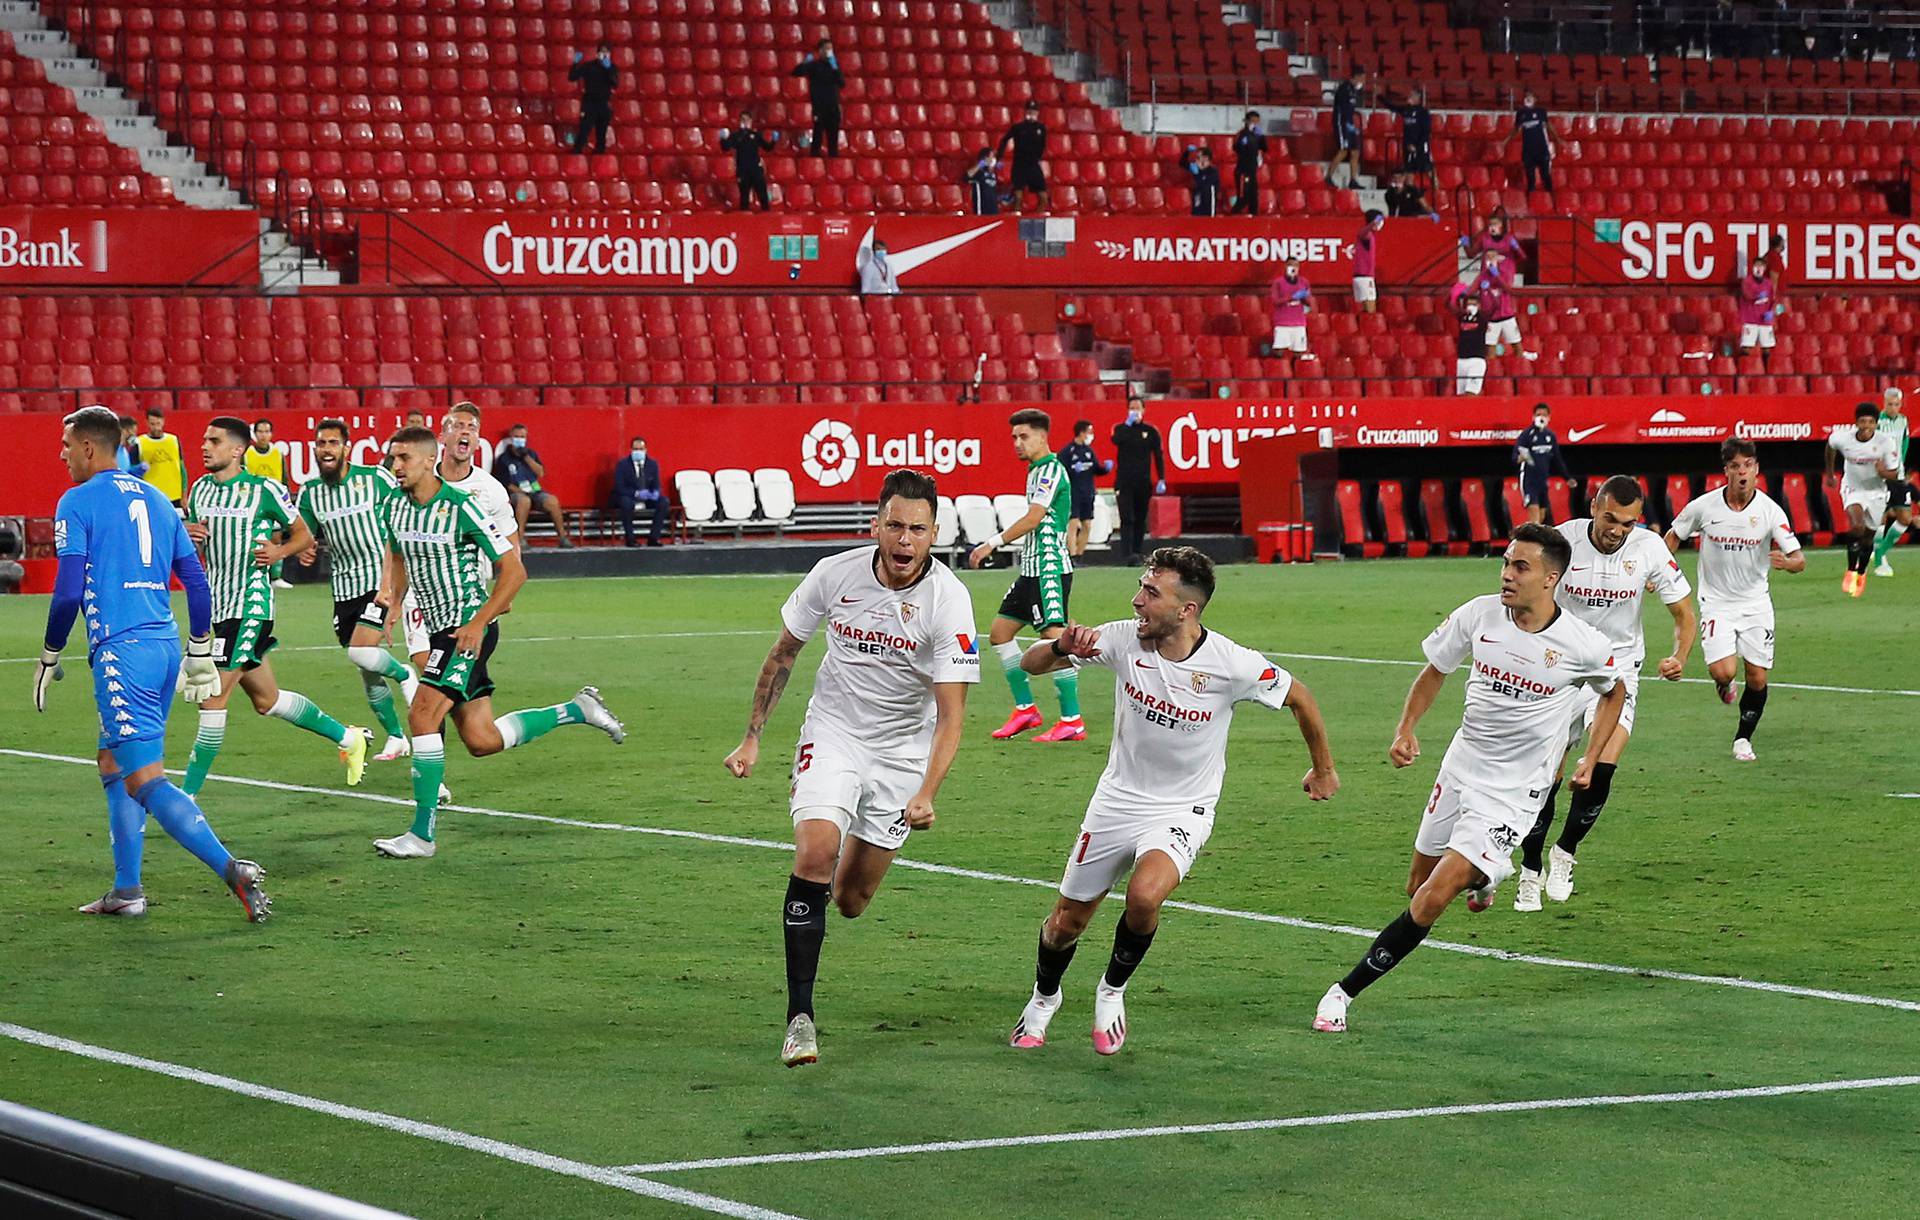 La Liga Santander - Sevilla v Real Betis